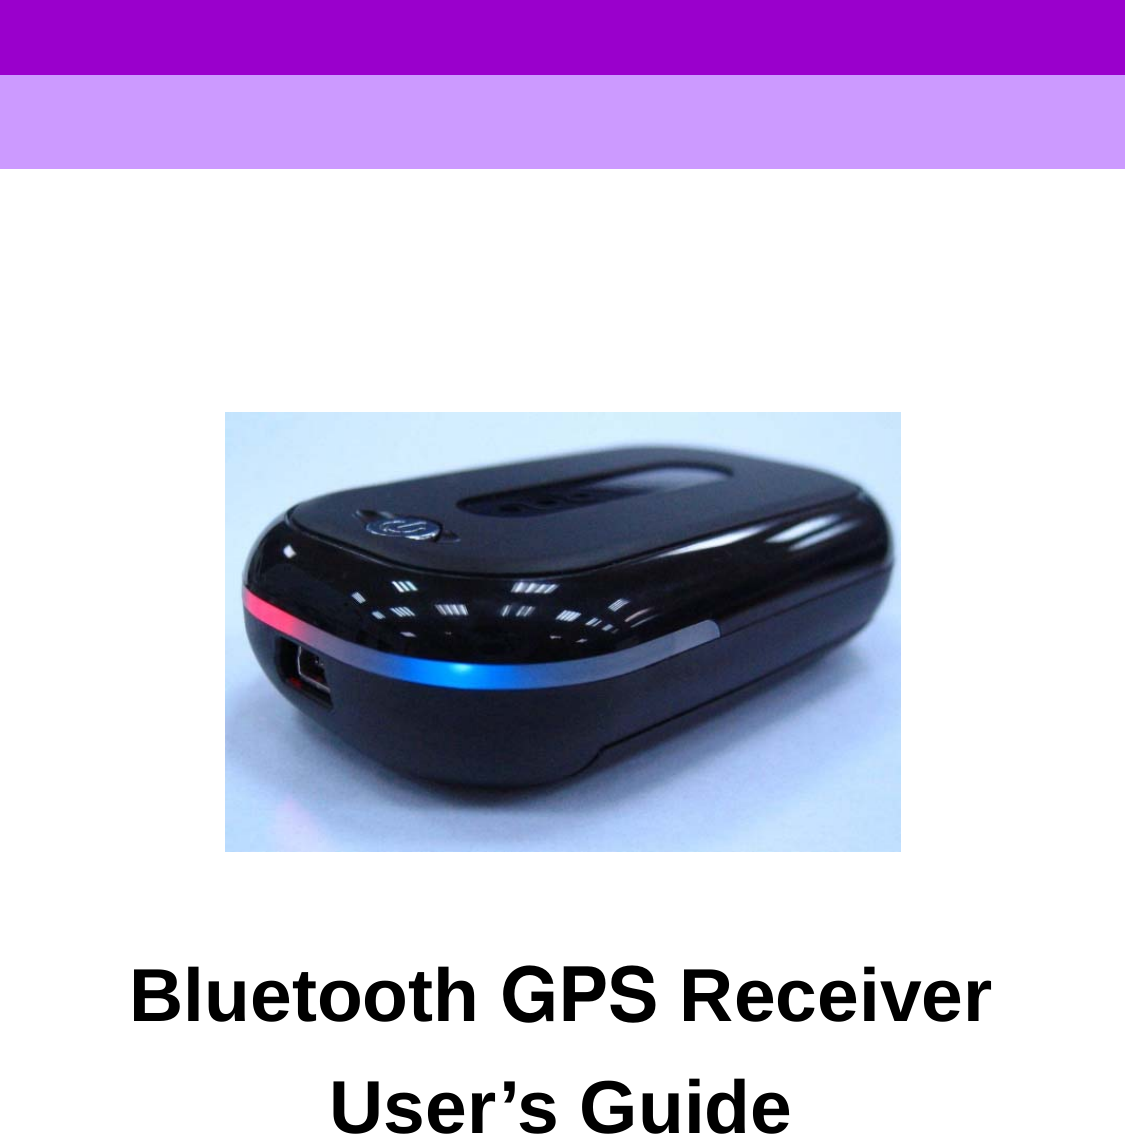      User’s GuideGPS Bluetooth Receiver                     Bluetooth GPS Receiver User’s Guide            